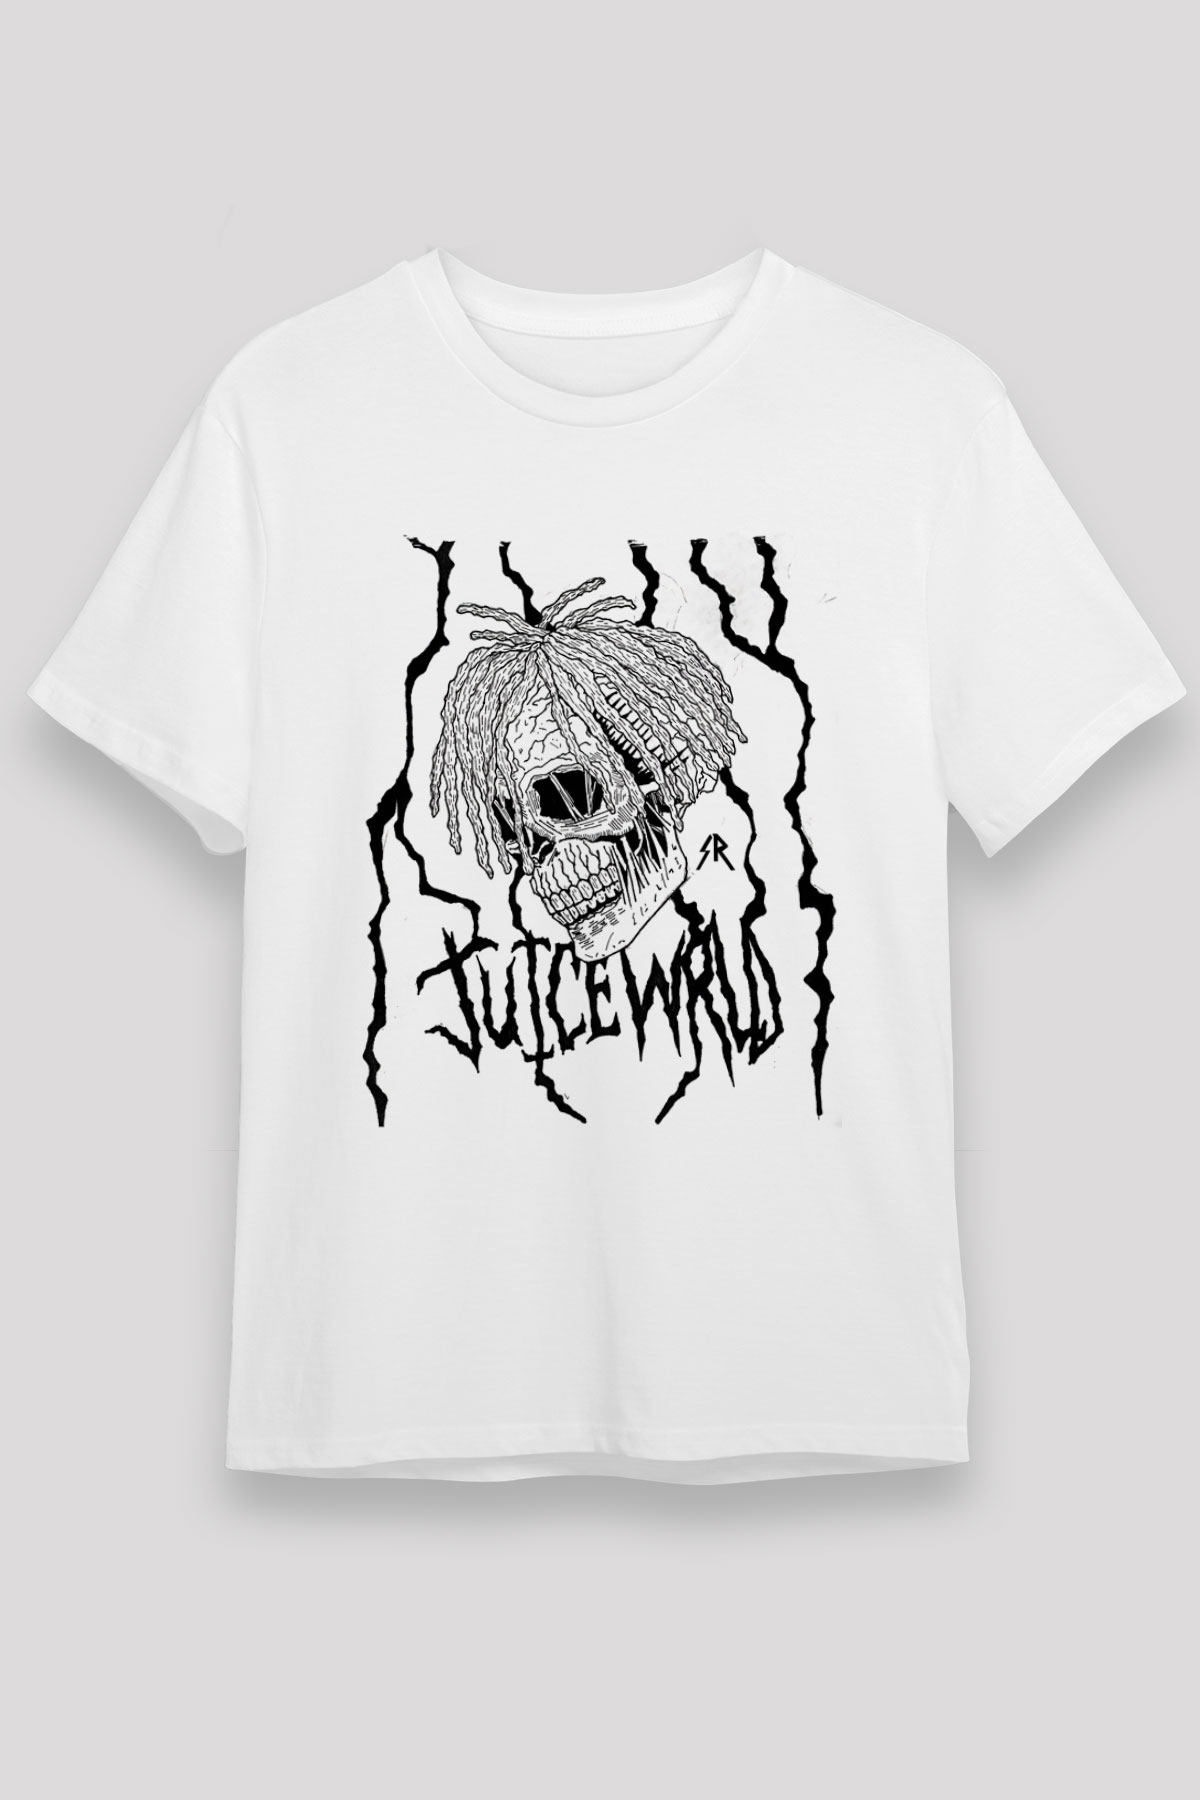 Juice Wrld T shirt,Hip Hop,Rap Tshirt 01